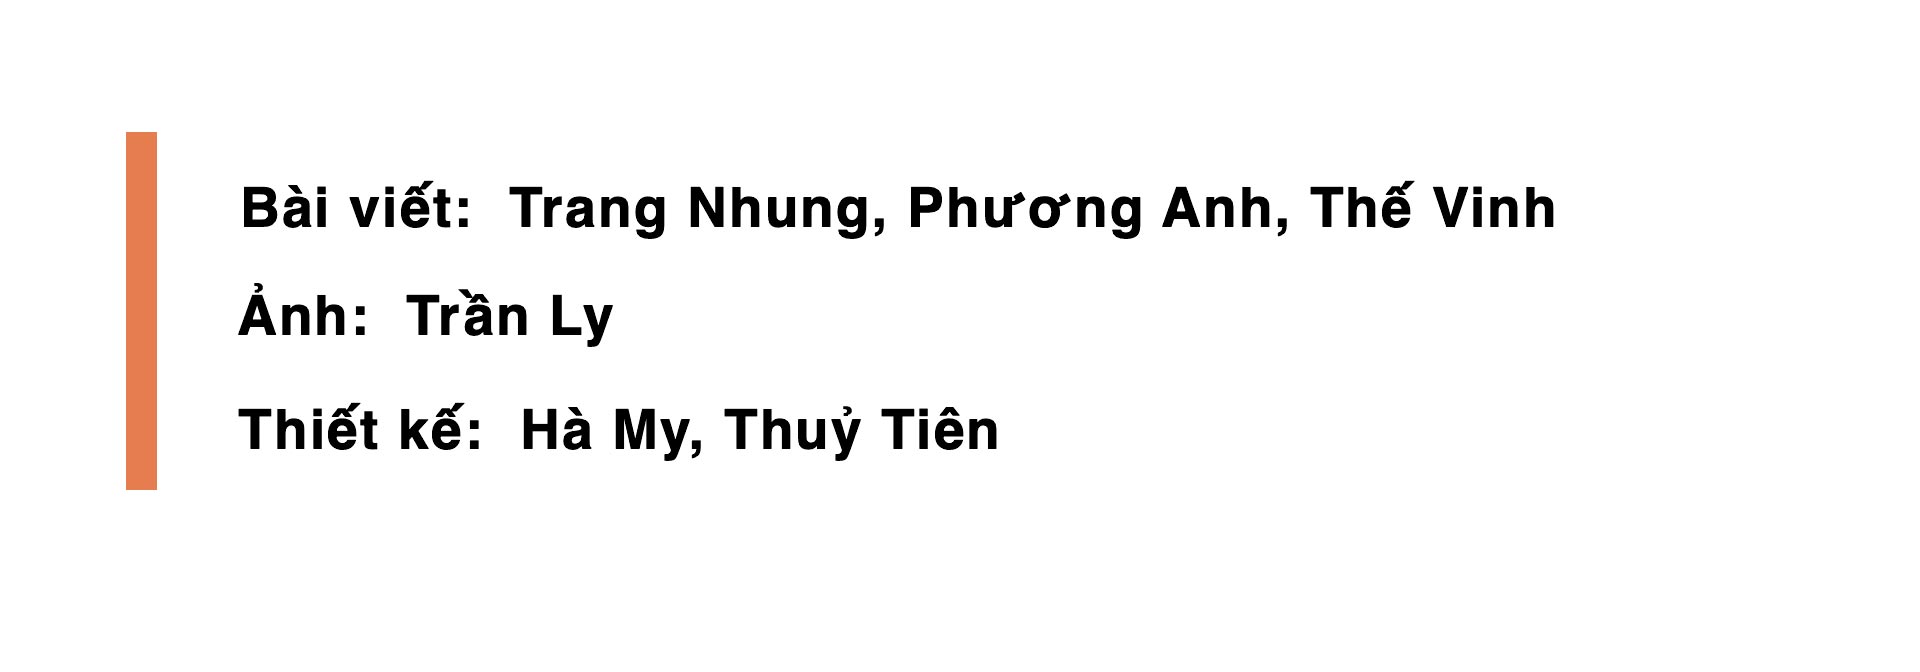 Nhà biên kịch và sản xuất hiện trường Đỗ Phương Trang: Bí quyết để có hàng loạt MV Top 1 trending Youtube -0